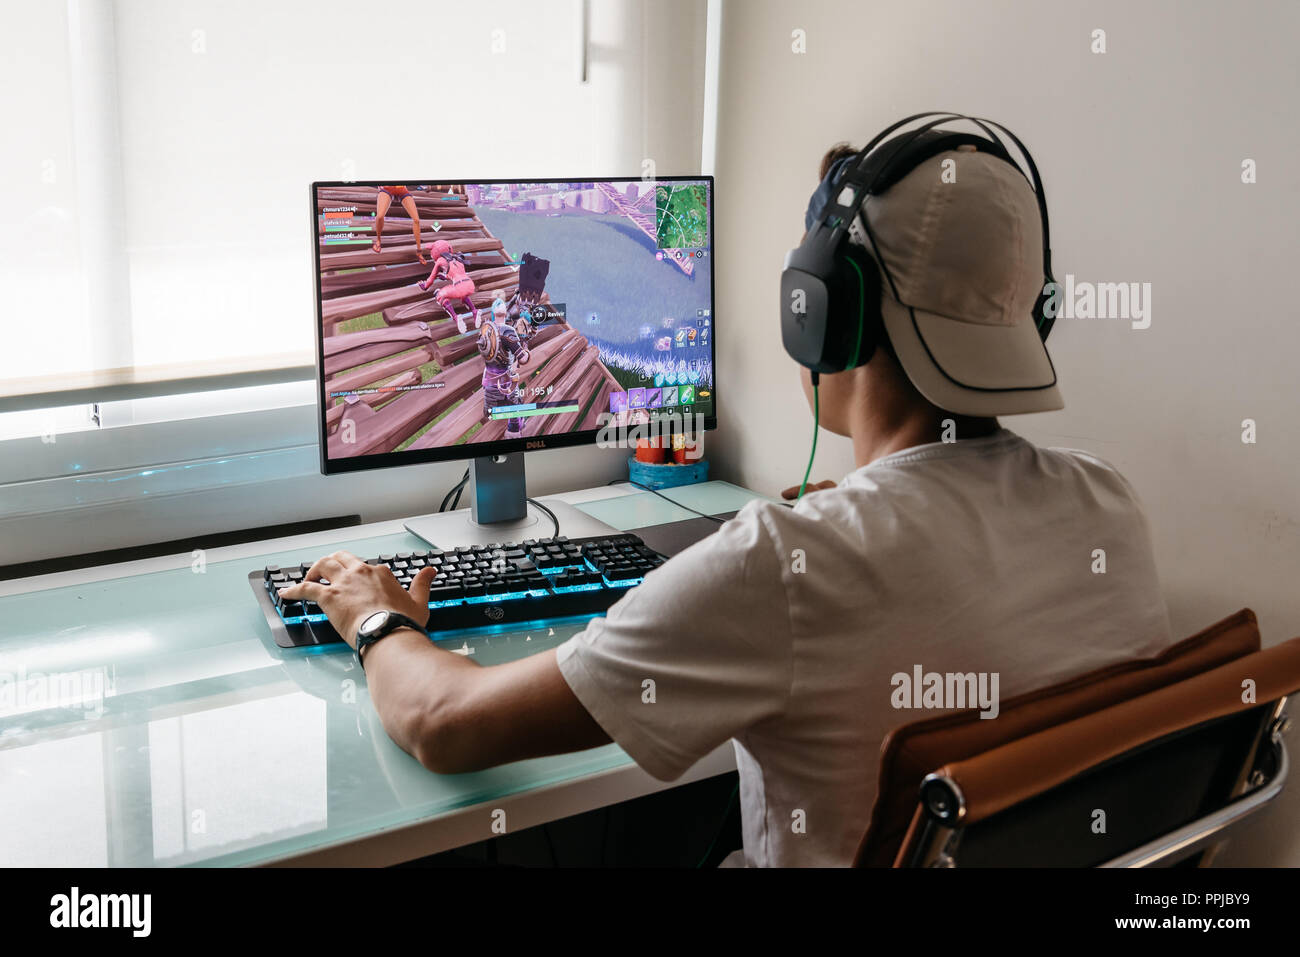 Madrid, Spanien - 15. August 2018: Jugendlicher spielen Fortnite video game auf PC. Fortnite ist ein Online Multiplayer Spiel von Epic Games entwickelt Stockfoto